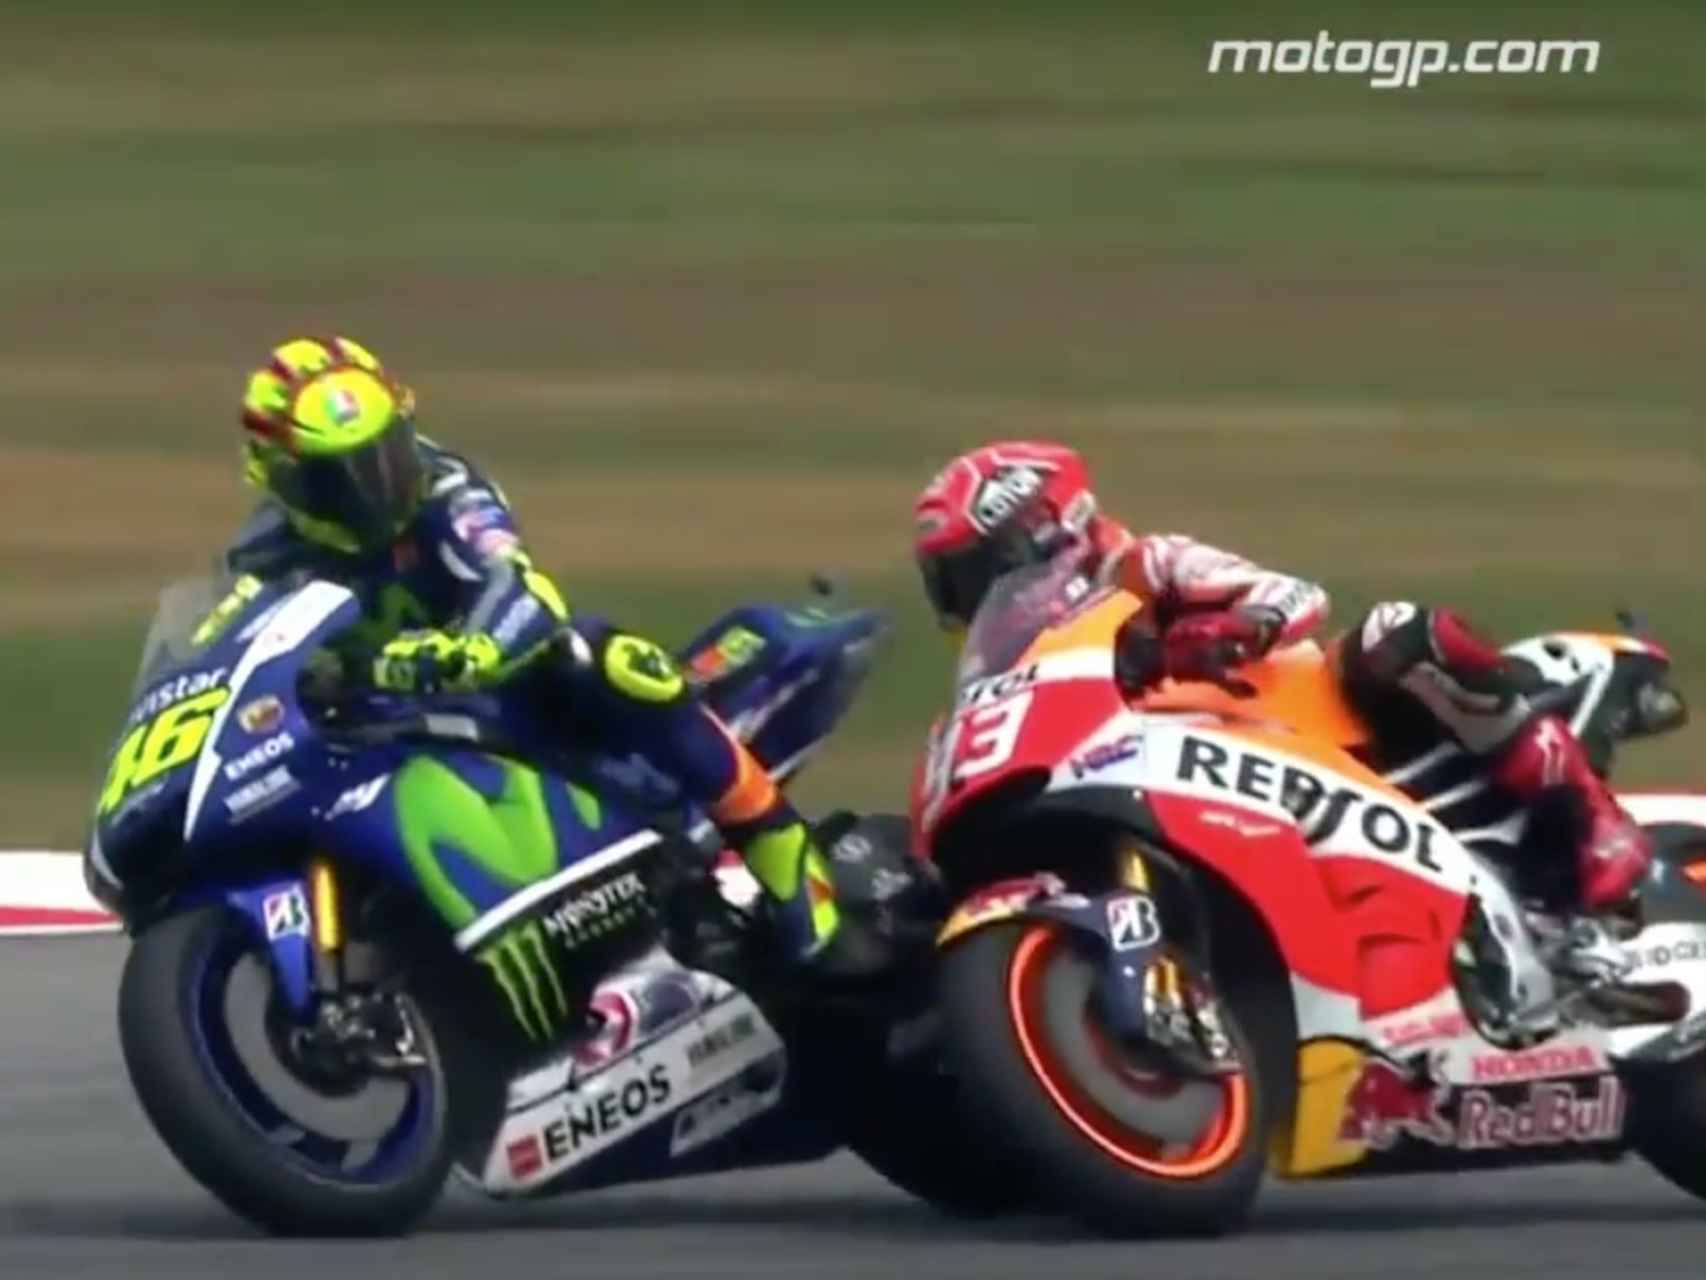 Acción entre Rossi y Márquez en Sepang.